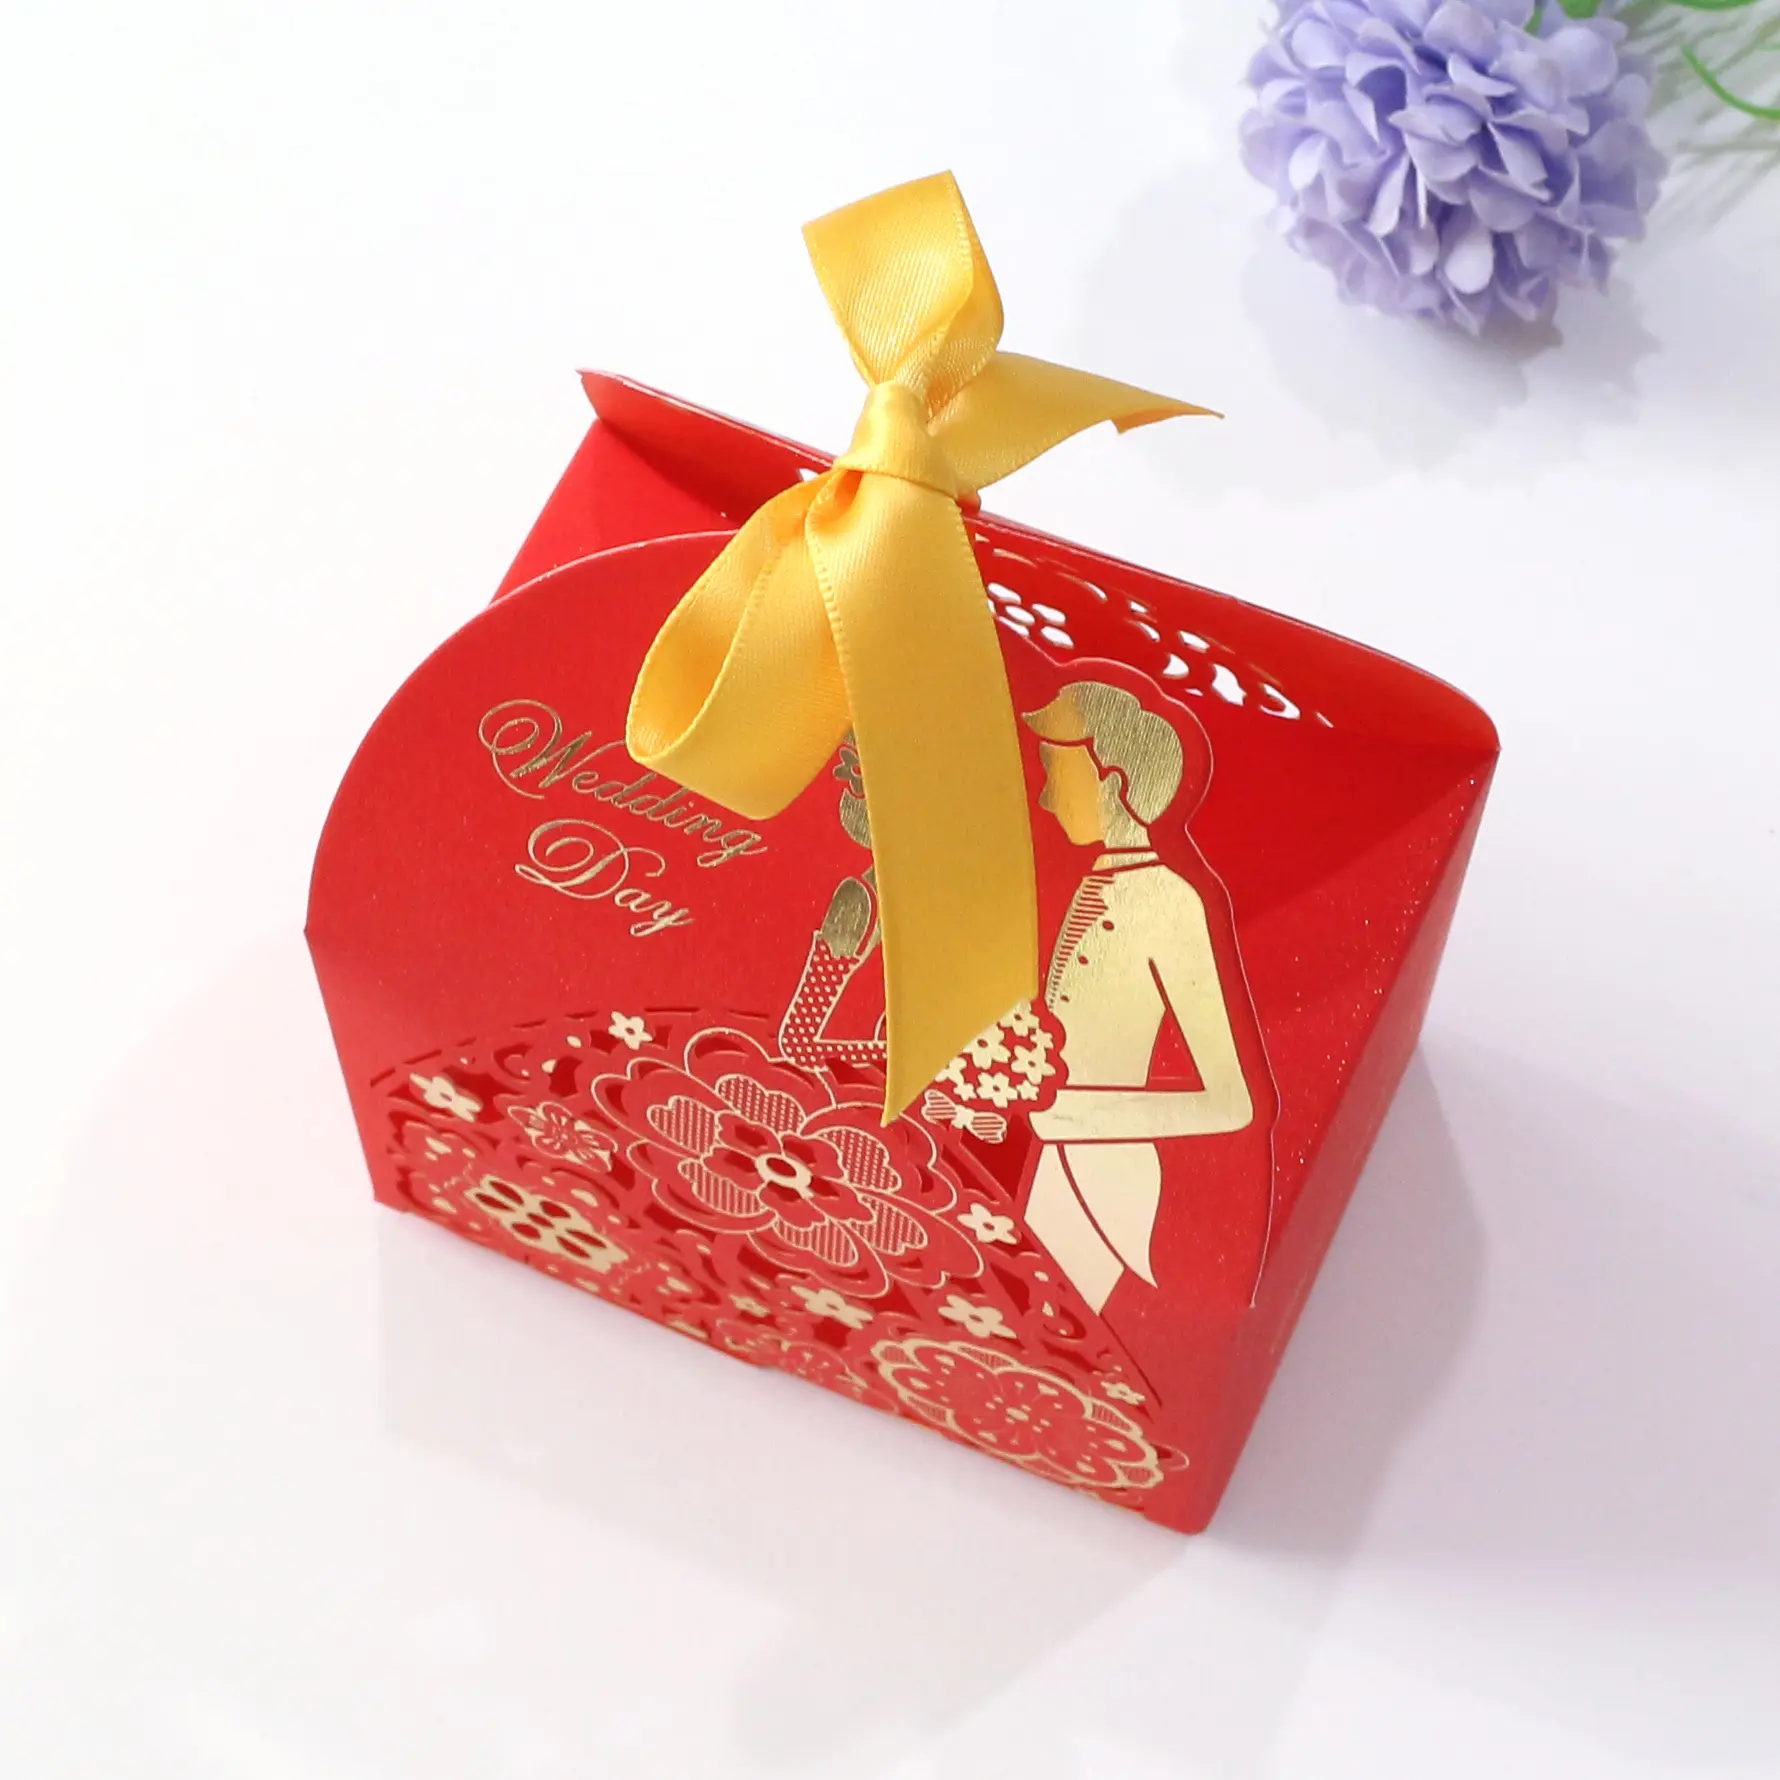 Toptan içi boş kırmızı çiçek şerit çikolata ambalajı kutusu düğün davetiyesi hediye şeker kutuları